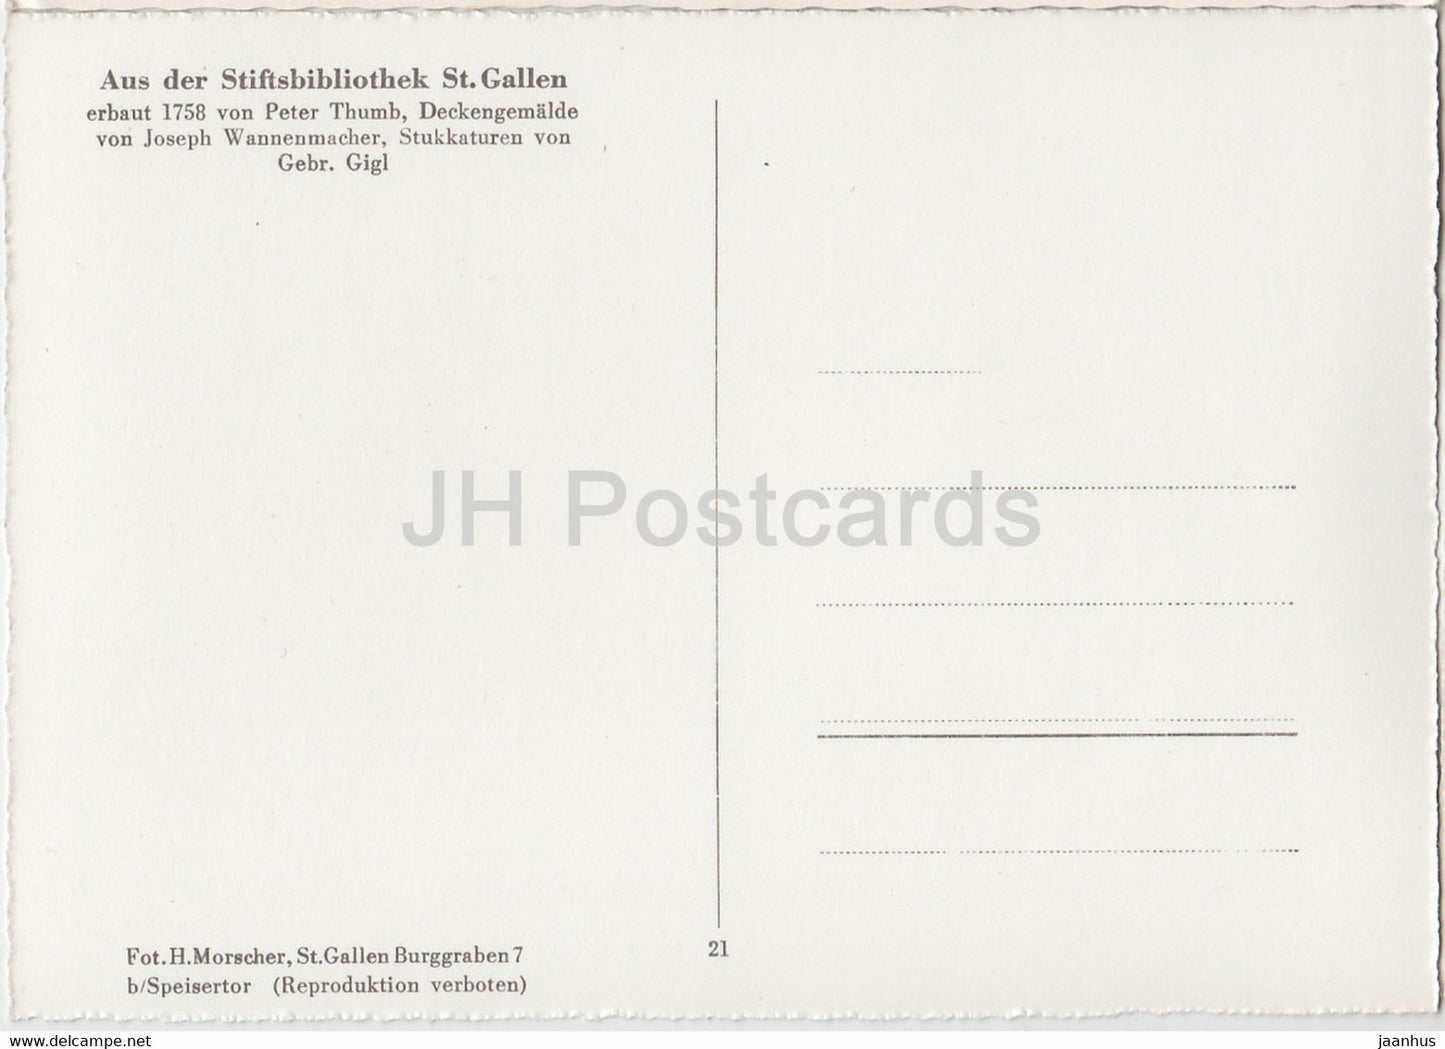 Deckengemalde - Aus der Stiftsbibliothek St Gallen - library - 21 - old postcard - Switzerland - unused